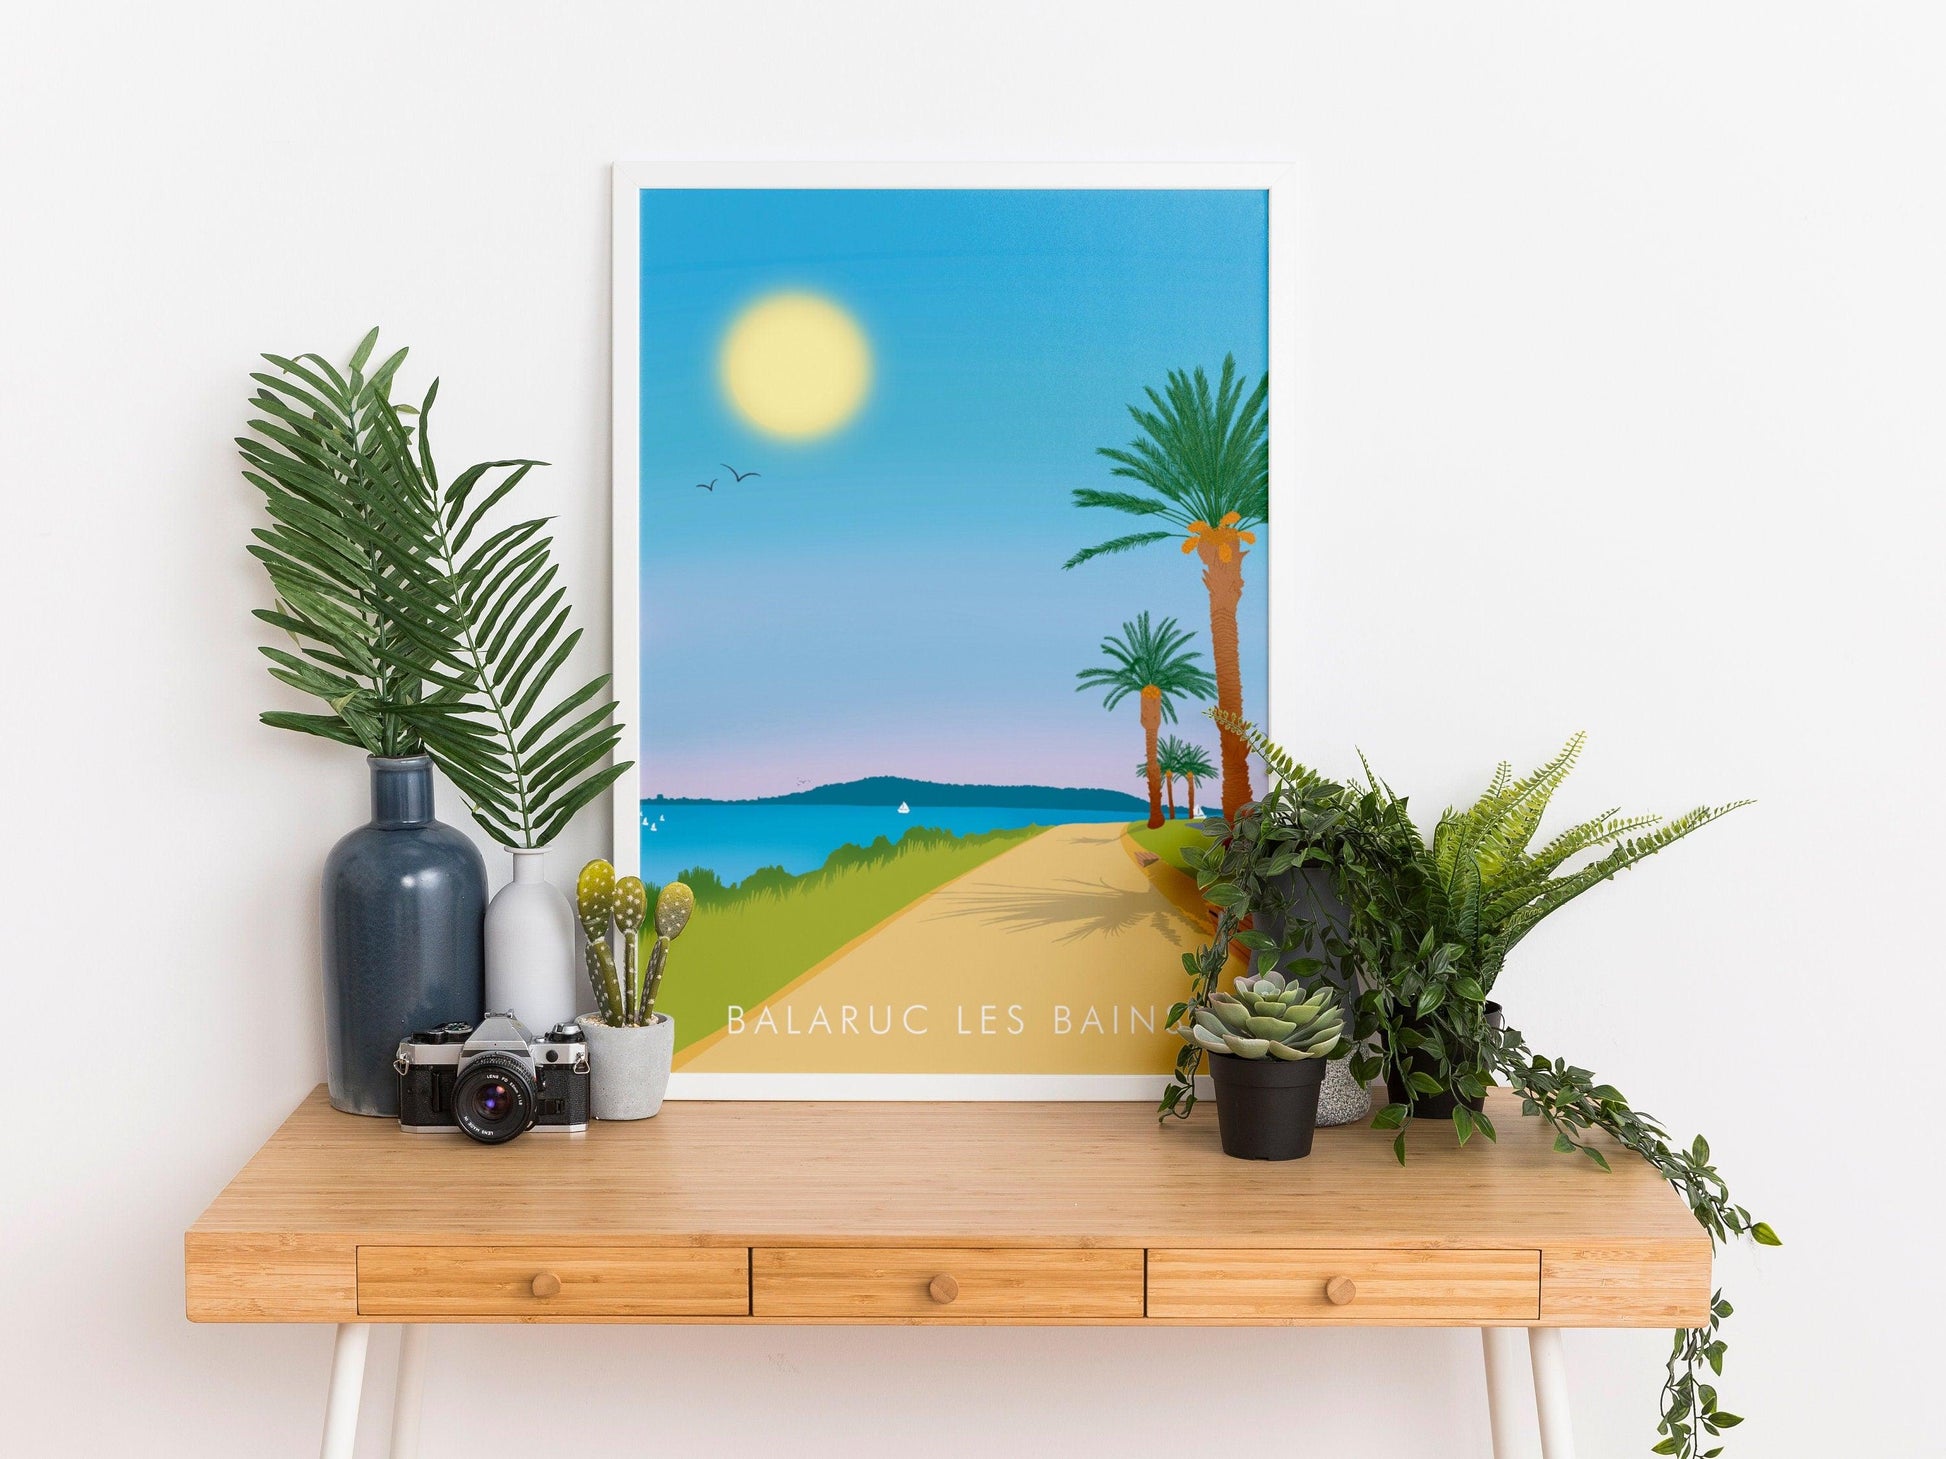 Balaruc les bains - Hérault - France - vacances carte postale affiche - couleur du sud - plage soleil - méditerranée - souvenir cadeau été - Imagine.affiche